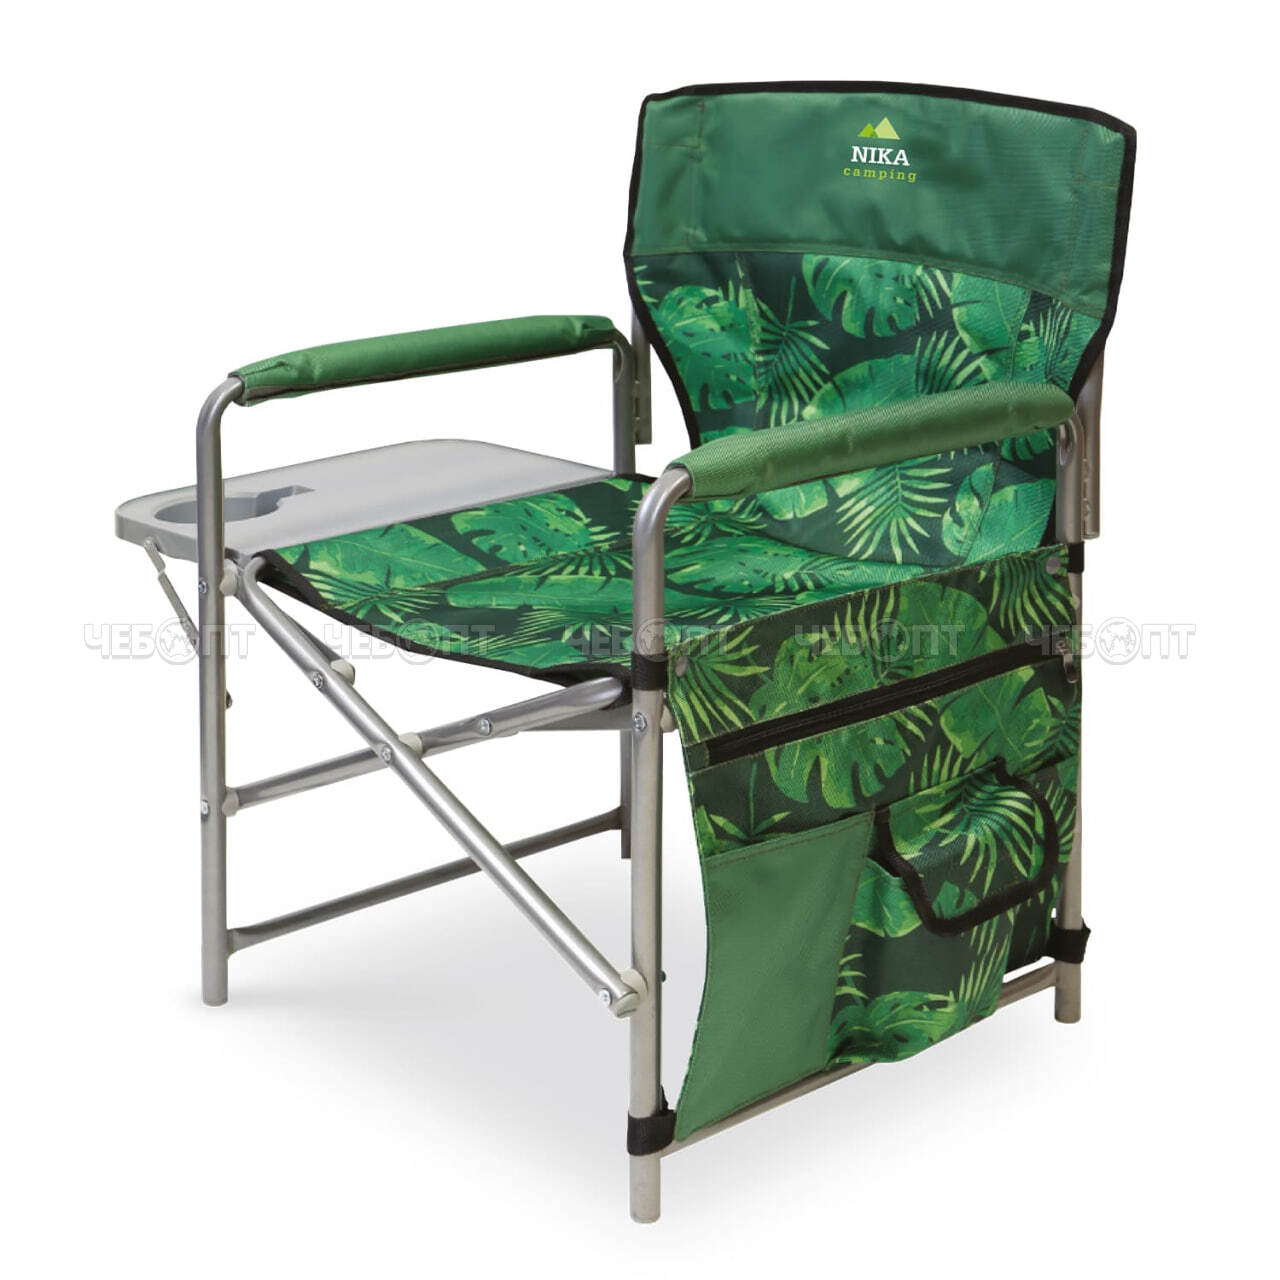 Кресло - складное туристическое С ПОЛКОЙ 490*550*820 мм, нагрузка 120 кг, ткань-водоотталкивающая пропитка арт. КСП NIKA [2]. ЧЕБОПТ.